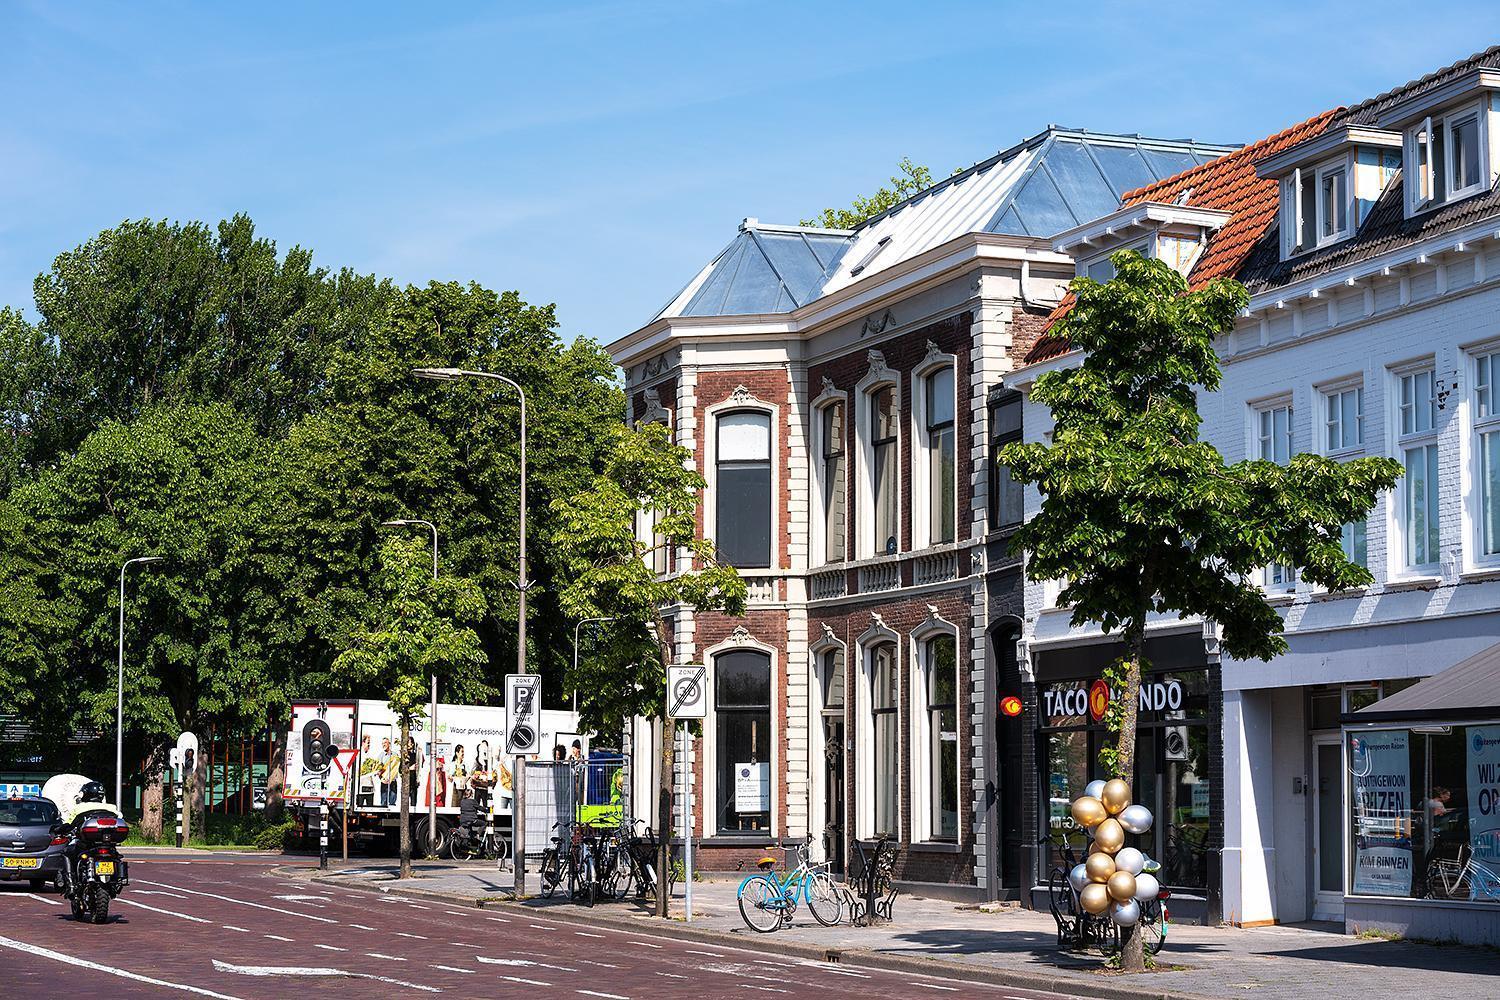 Zink roevendak op maat - Renovatie monumentaal pand Zwolle